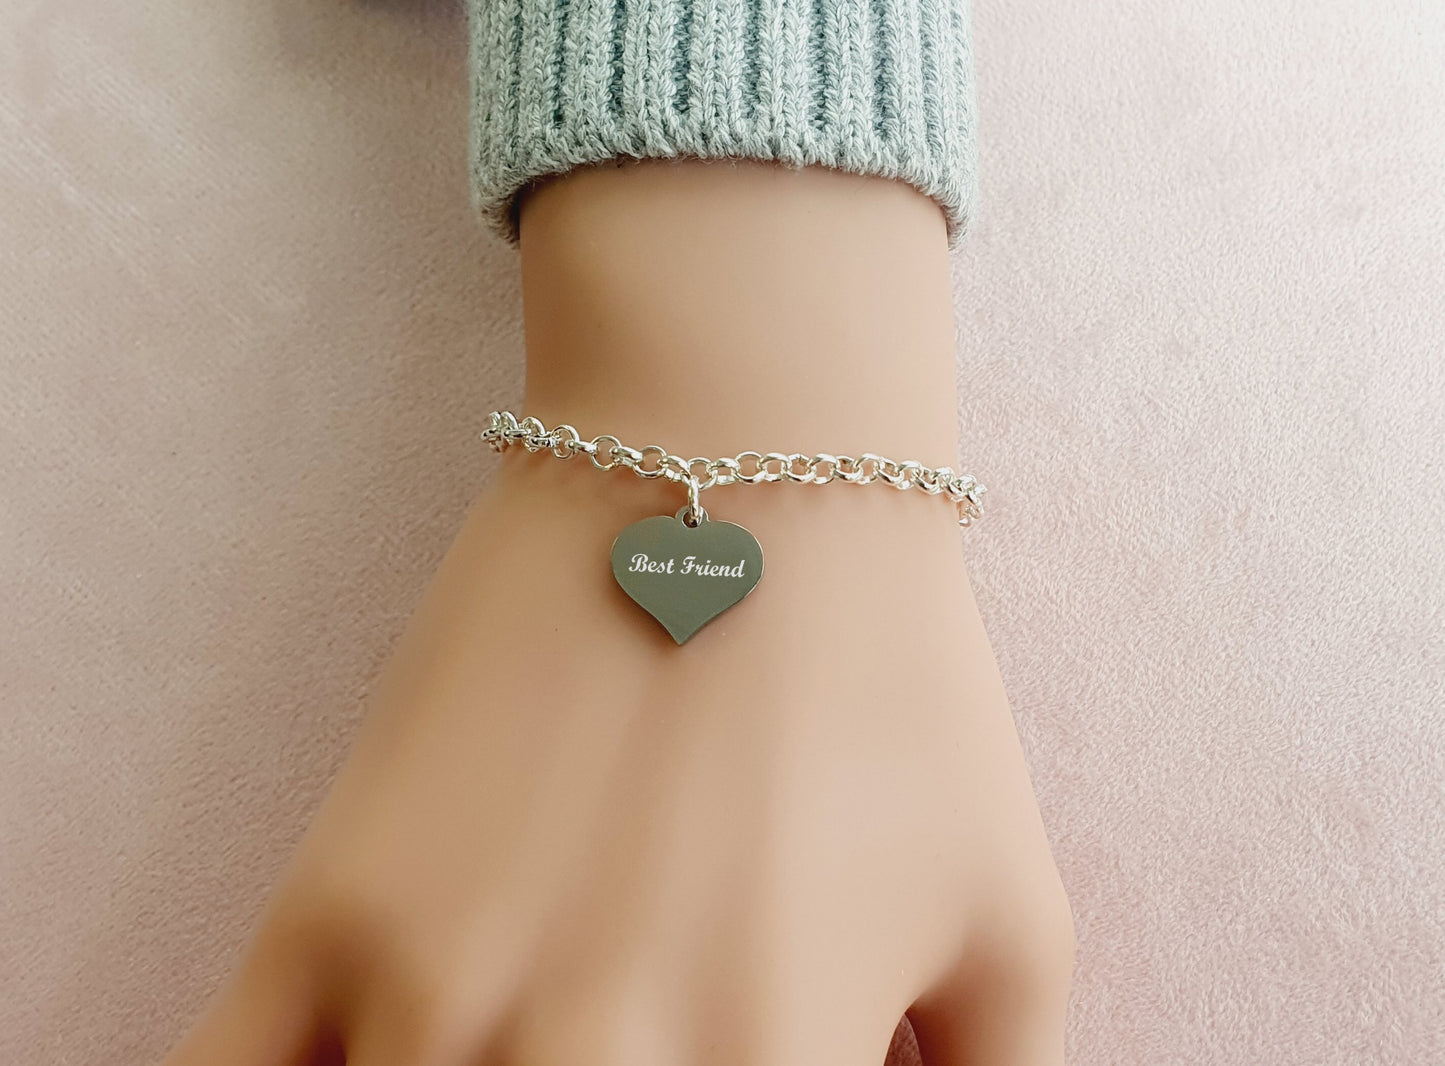 Best Friend Engraved Heart Charm Link Bracelet, Personalised Bracelet, Message Jewellery